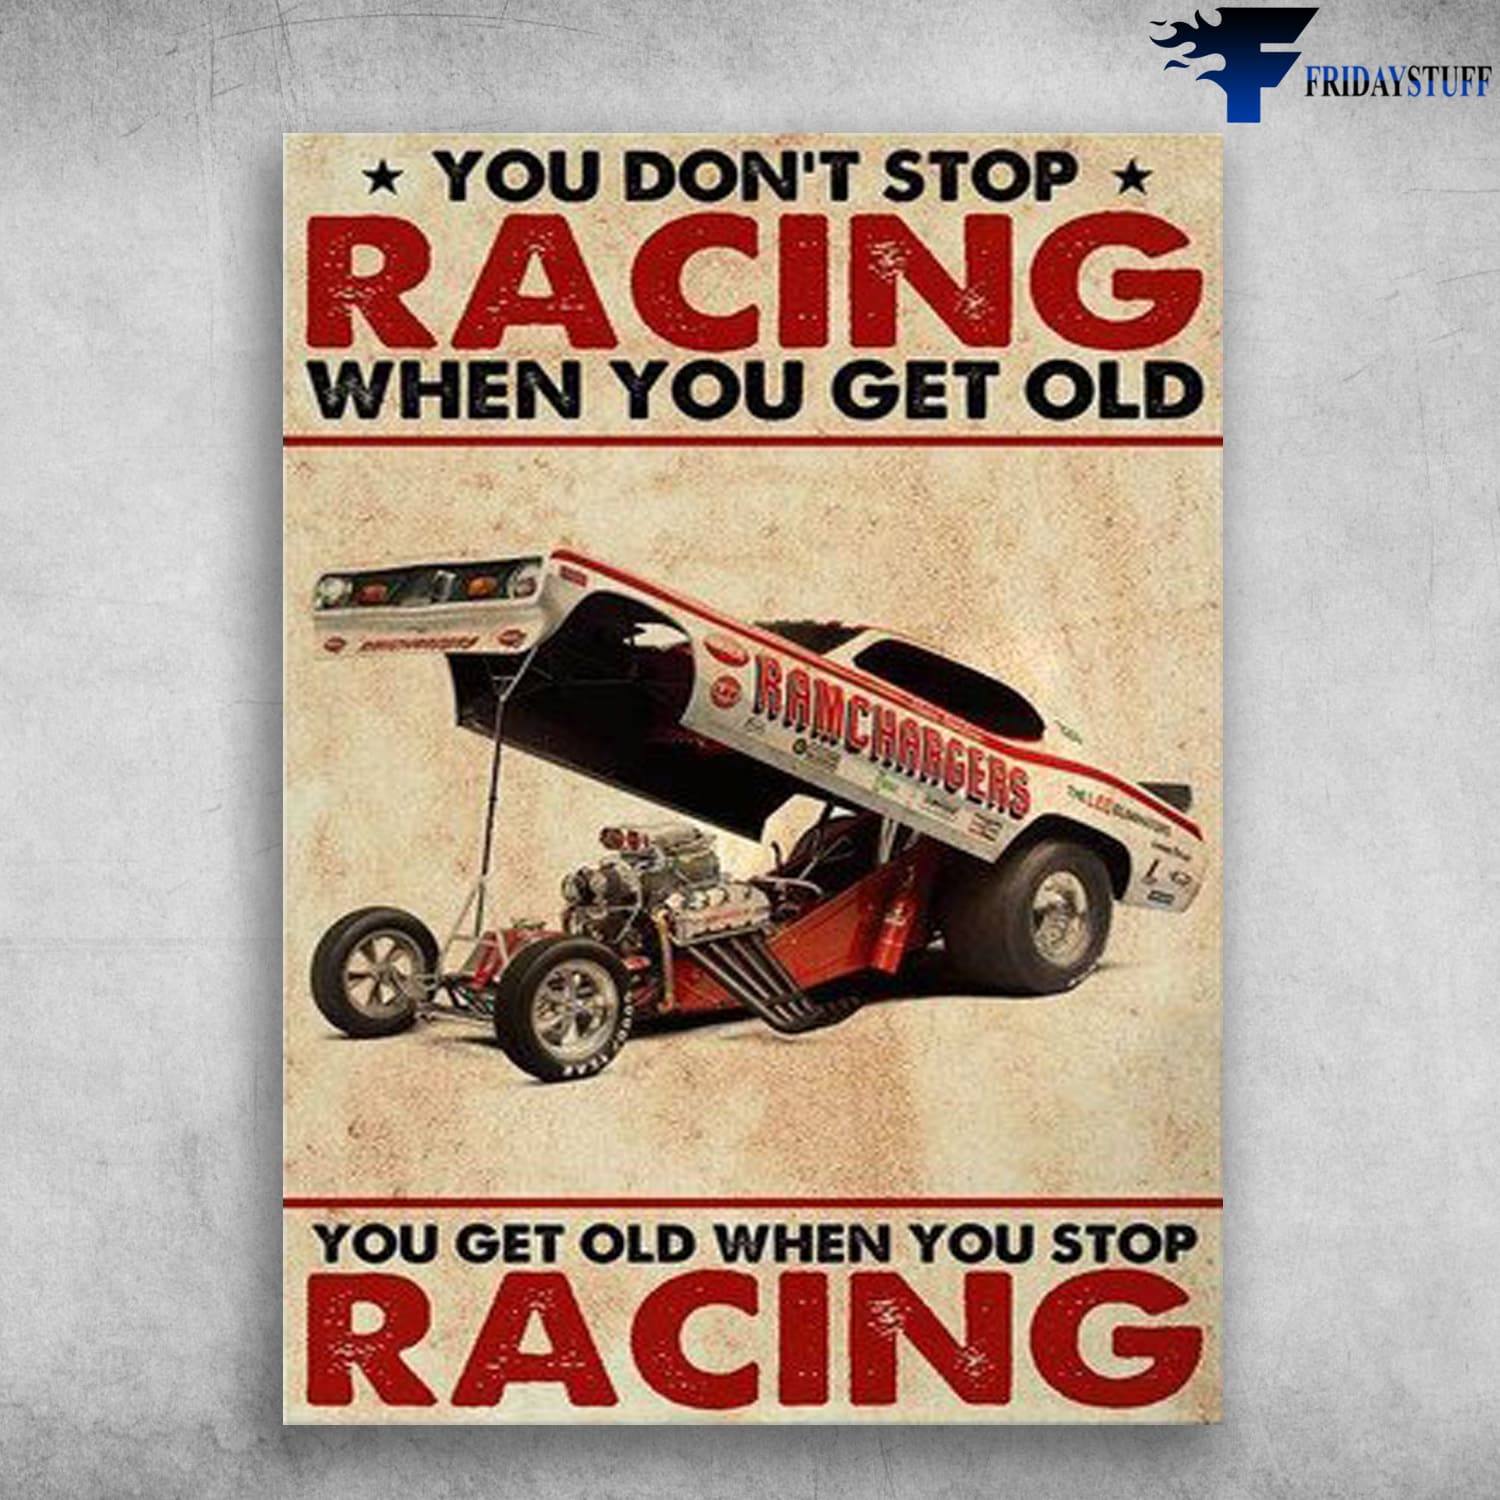 Ricing Car, Car Poster, You Don't Stop Racing When You Get Old, You Get Old When You Stop Racing